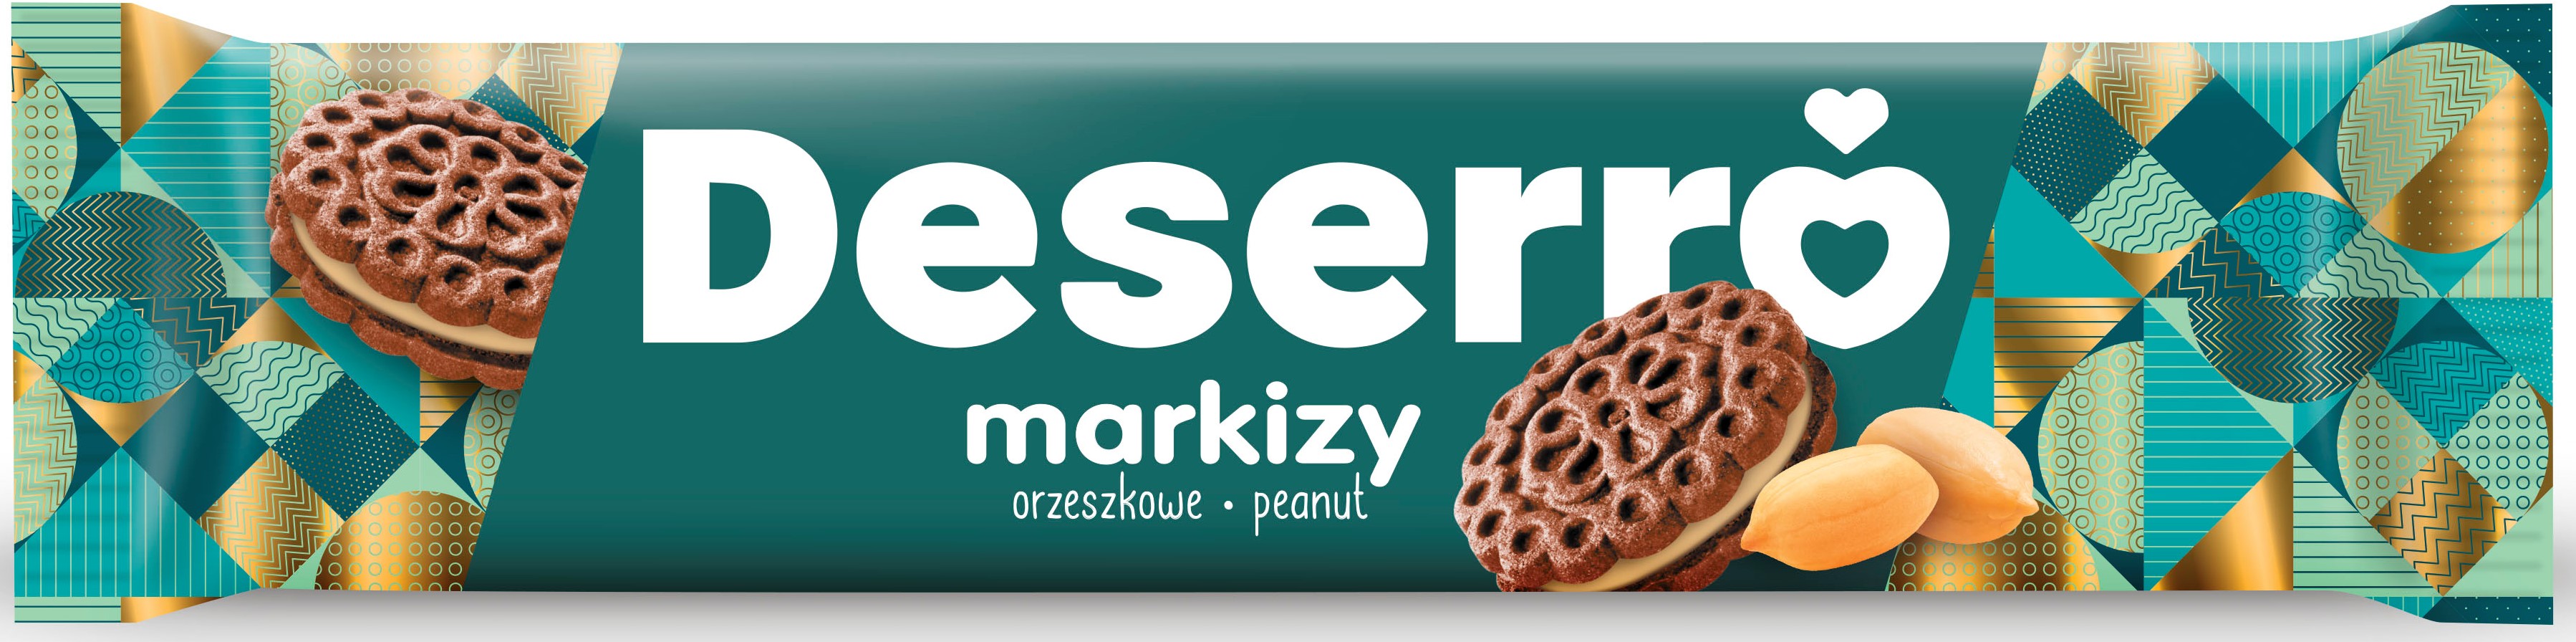 Cukry Nyskie Deserro markizy orzeszkowe